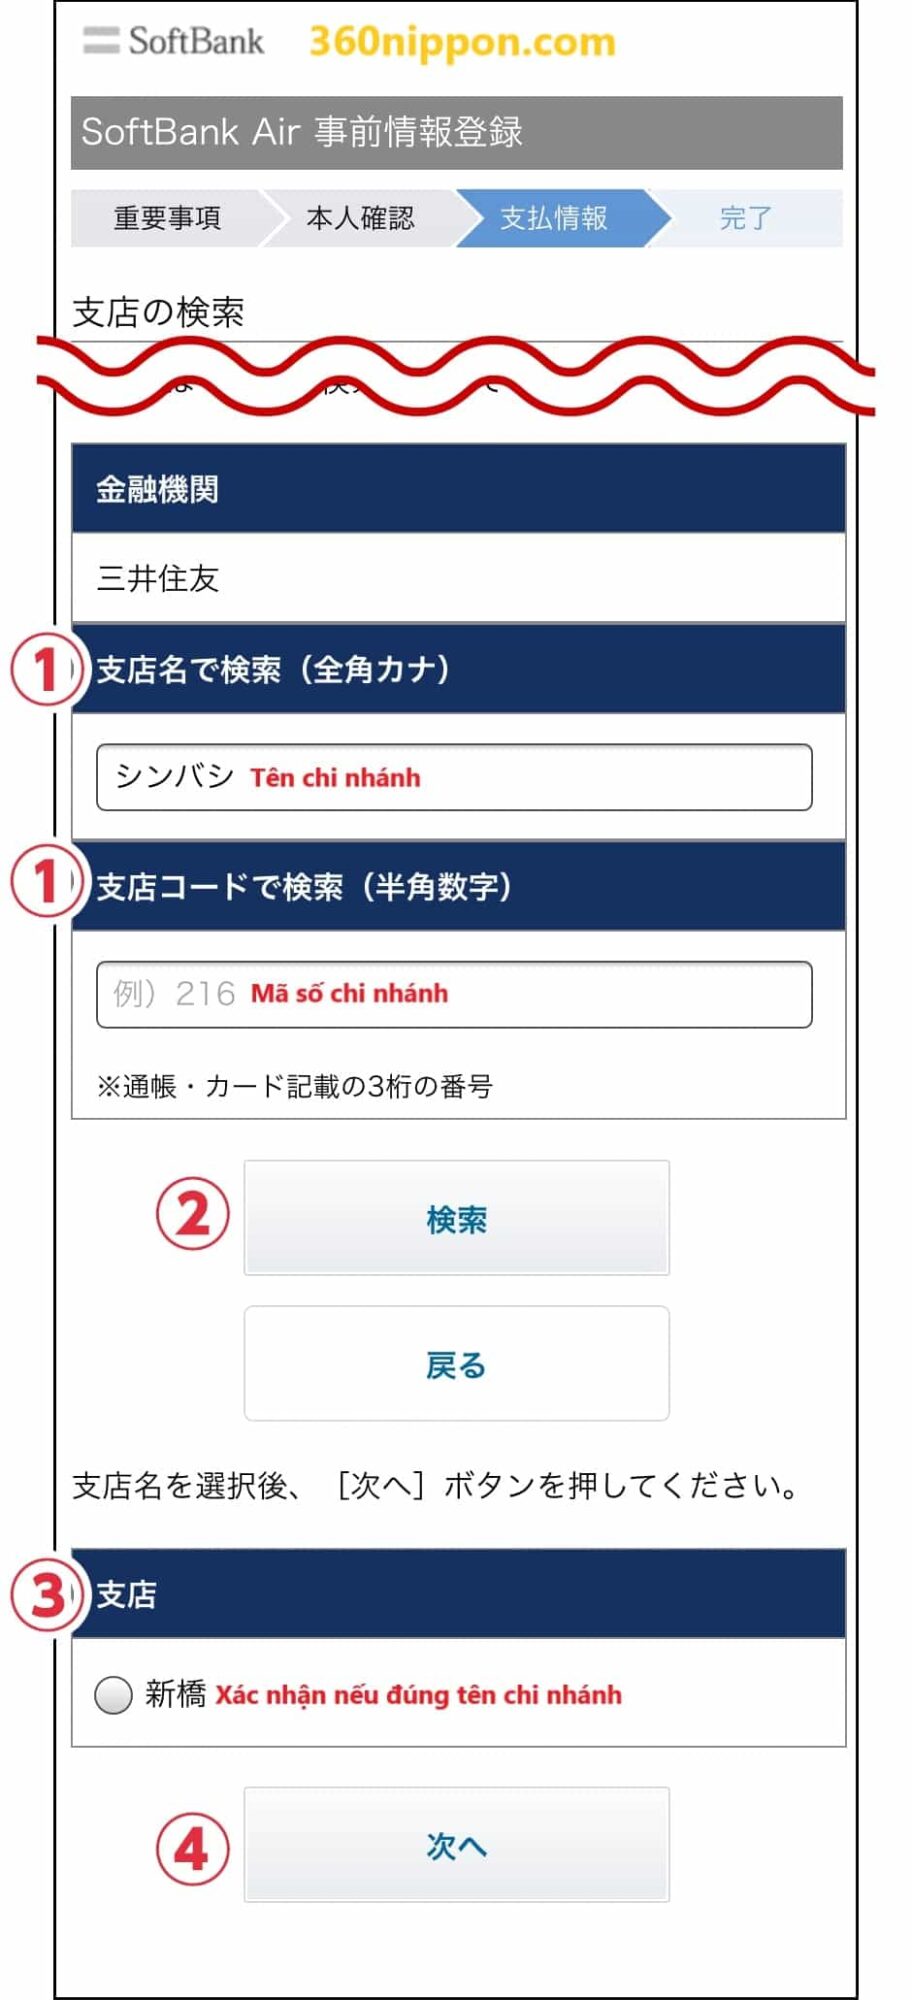 Hướng dẫn cách tự đăng ký wifi cố định softbank ở Nhật 62